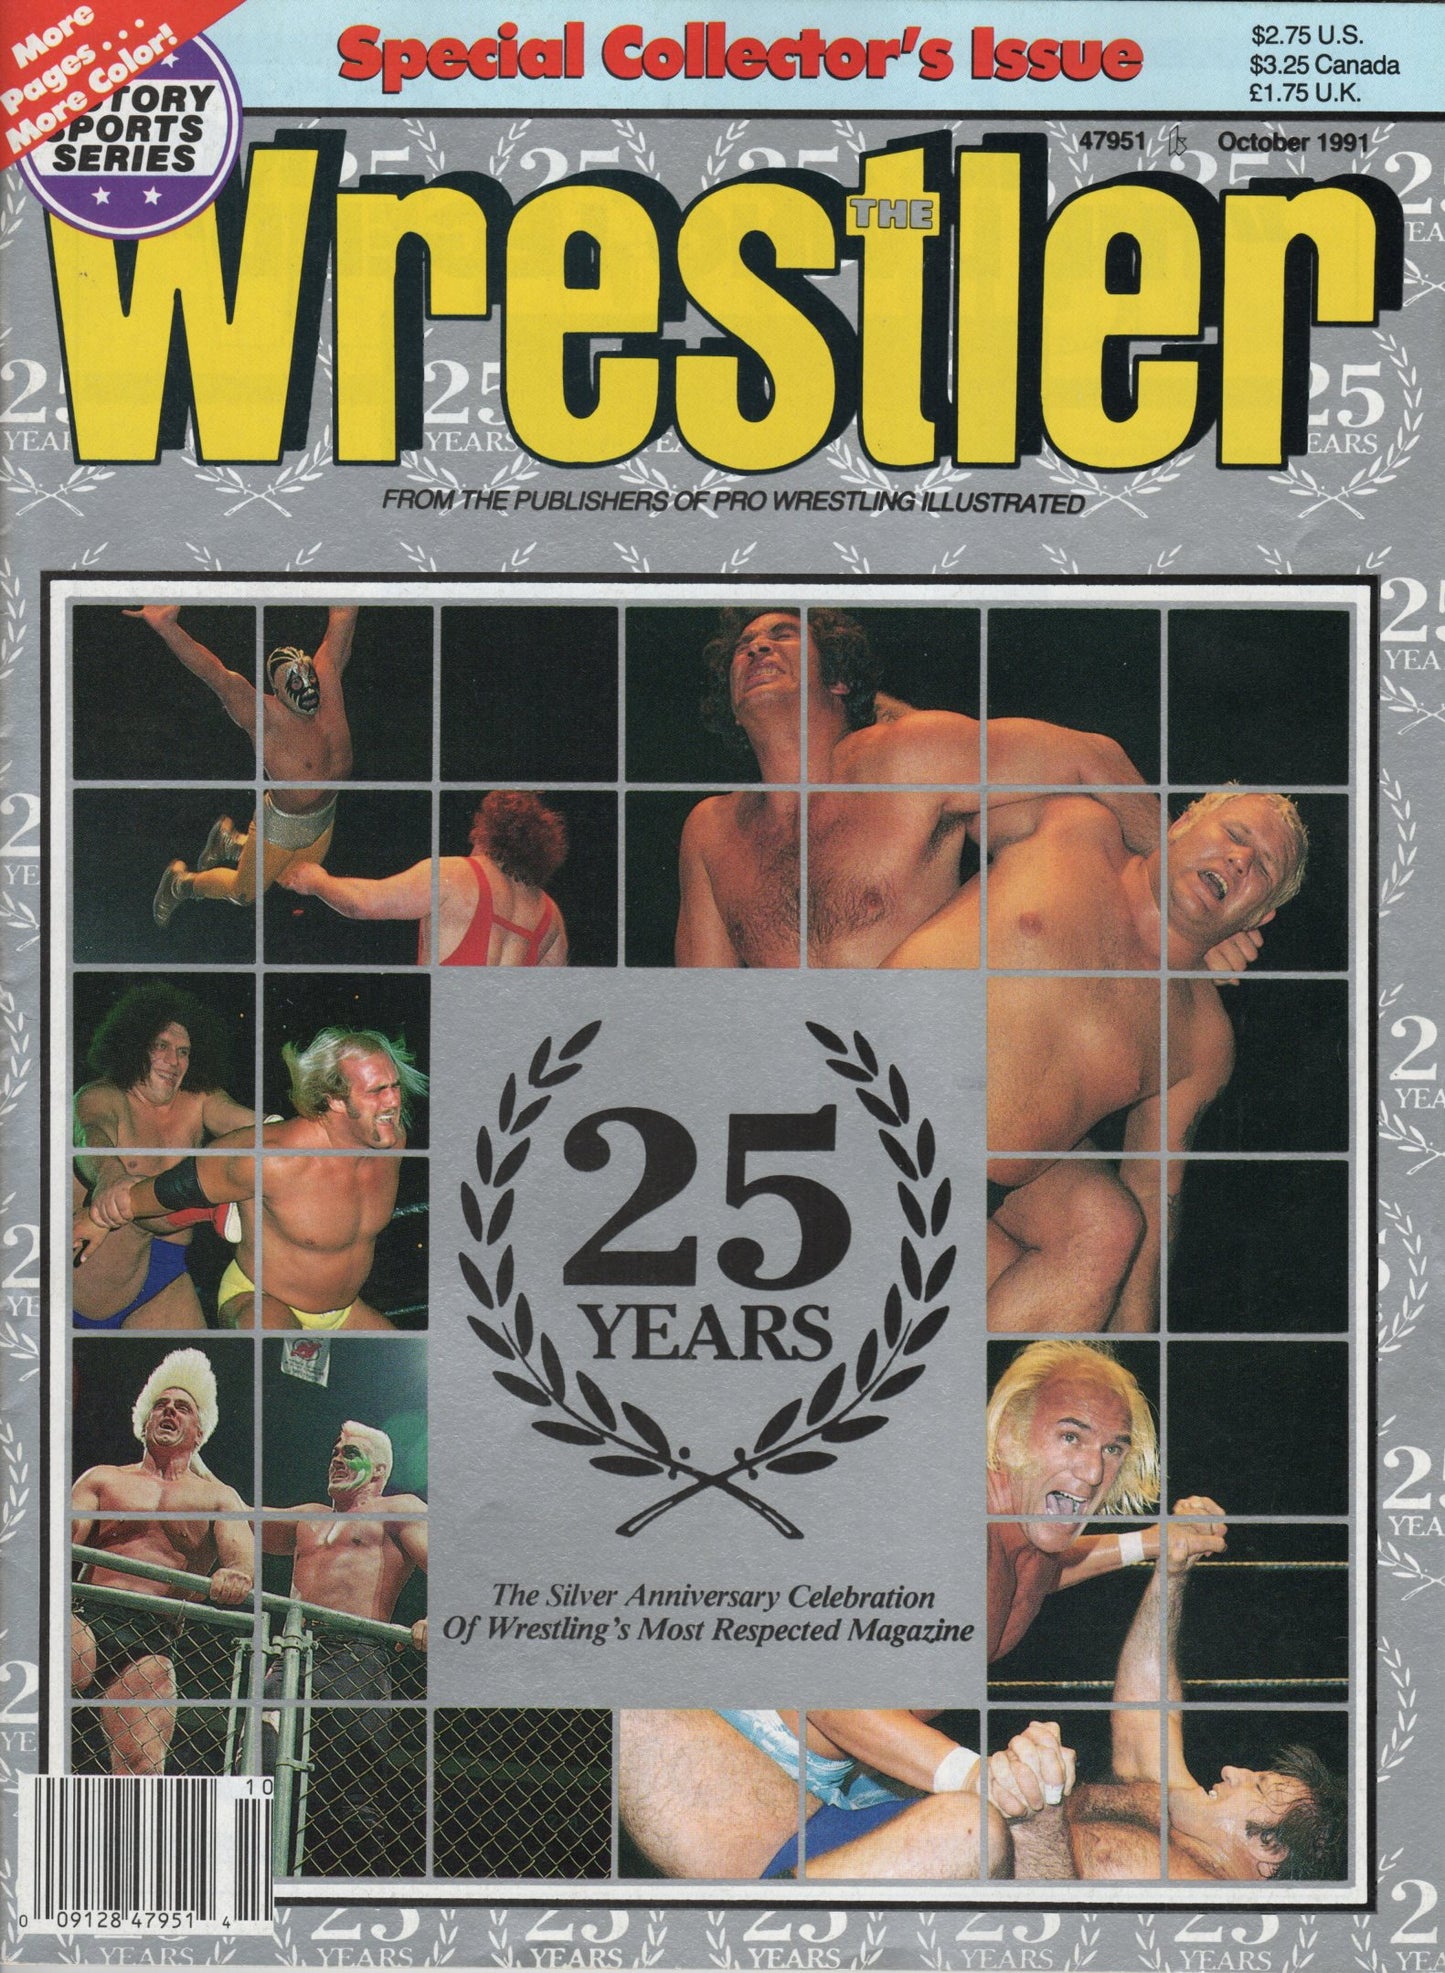 The Wrestler Magazine October 1991